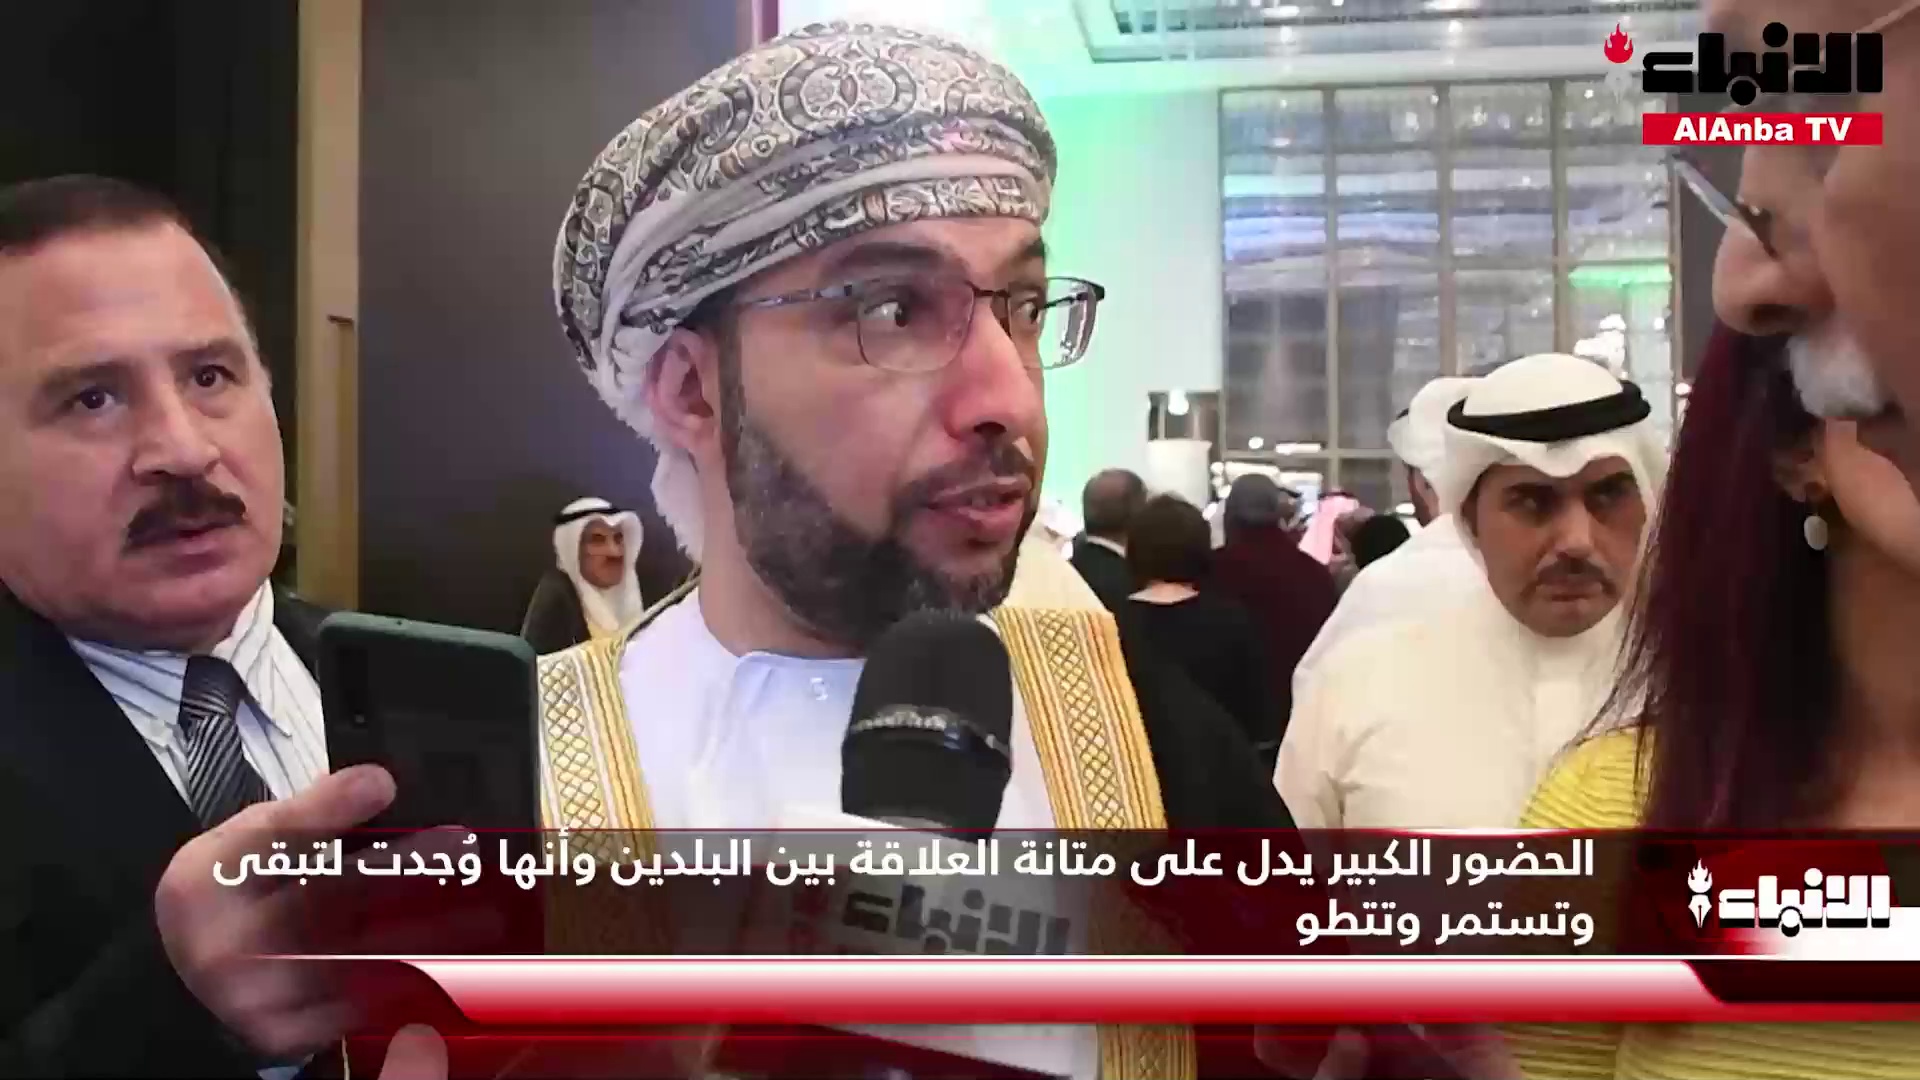 السفير د.صالح الخروصي خلال الاحتفال بالعيد الوطني الـ 52 للسلطنة  العلاقات العمانية - الكويتية وُجدت لتبقى وتستمر وتتطور